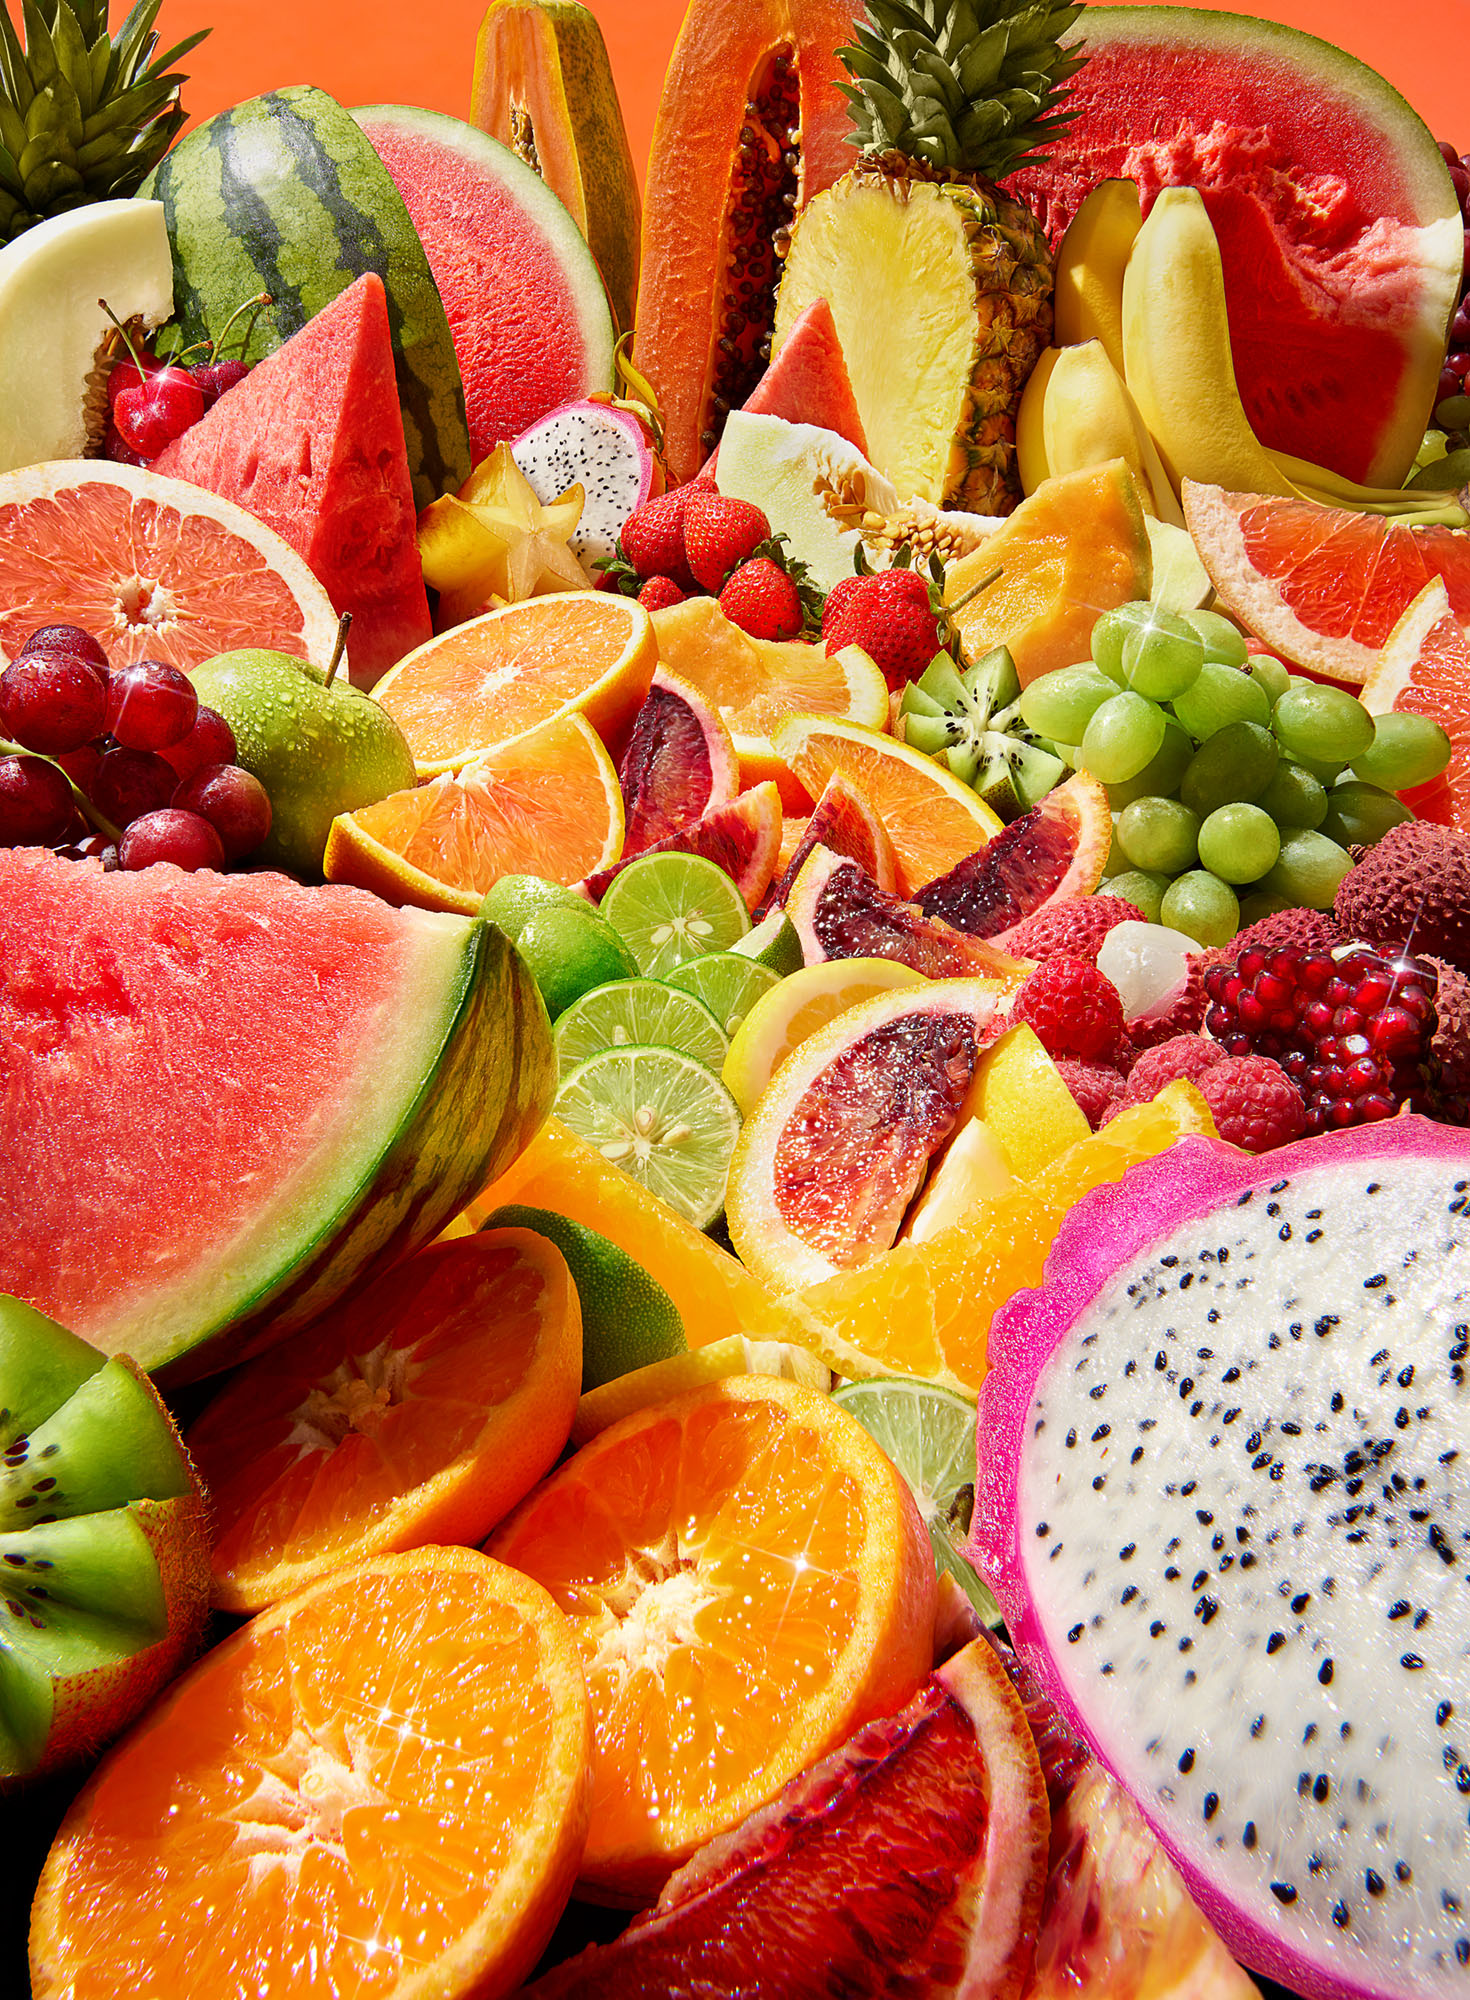 RGB-EatingWell-Sugar-FruitScape